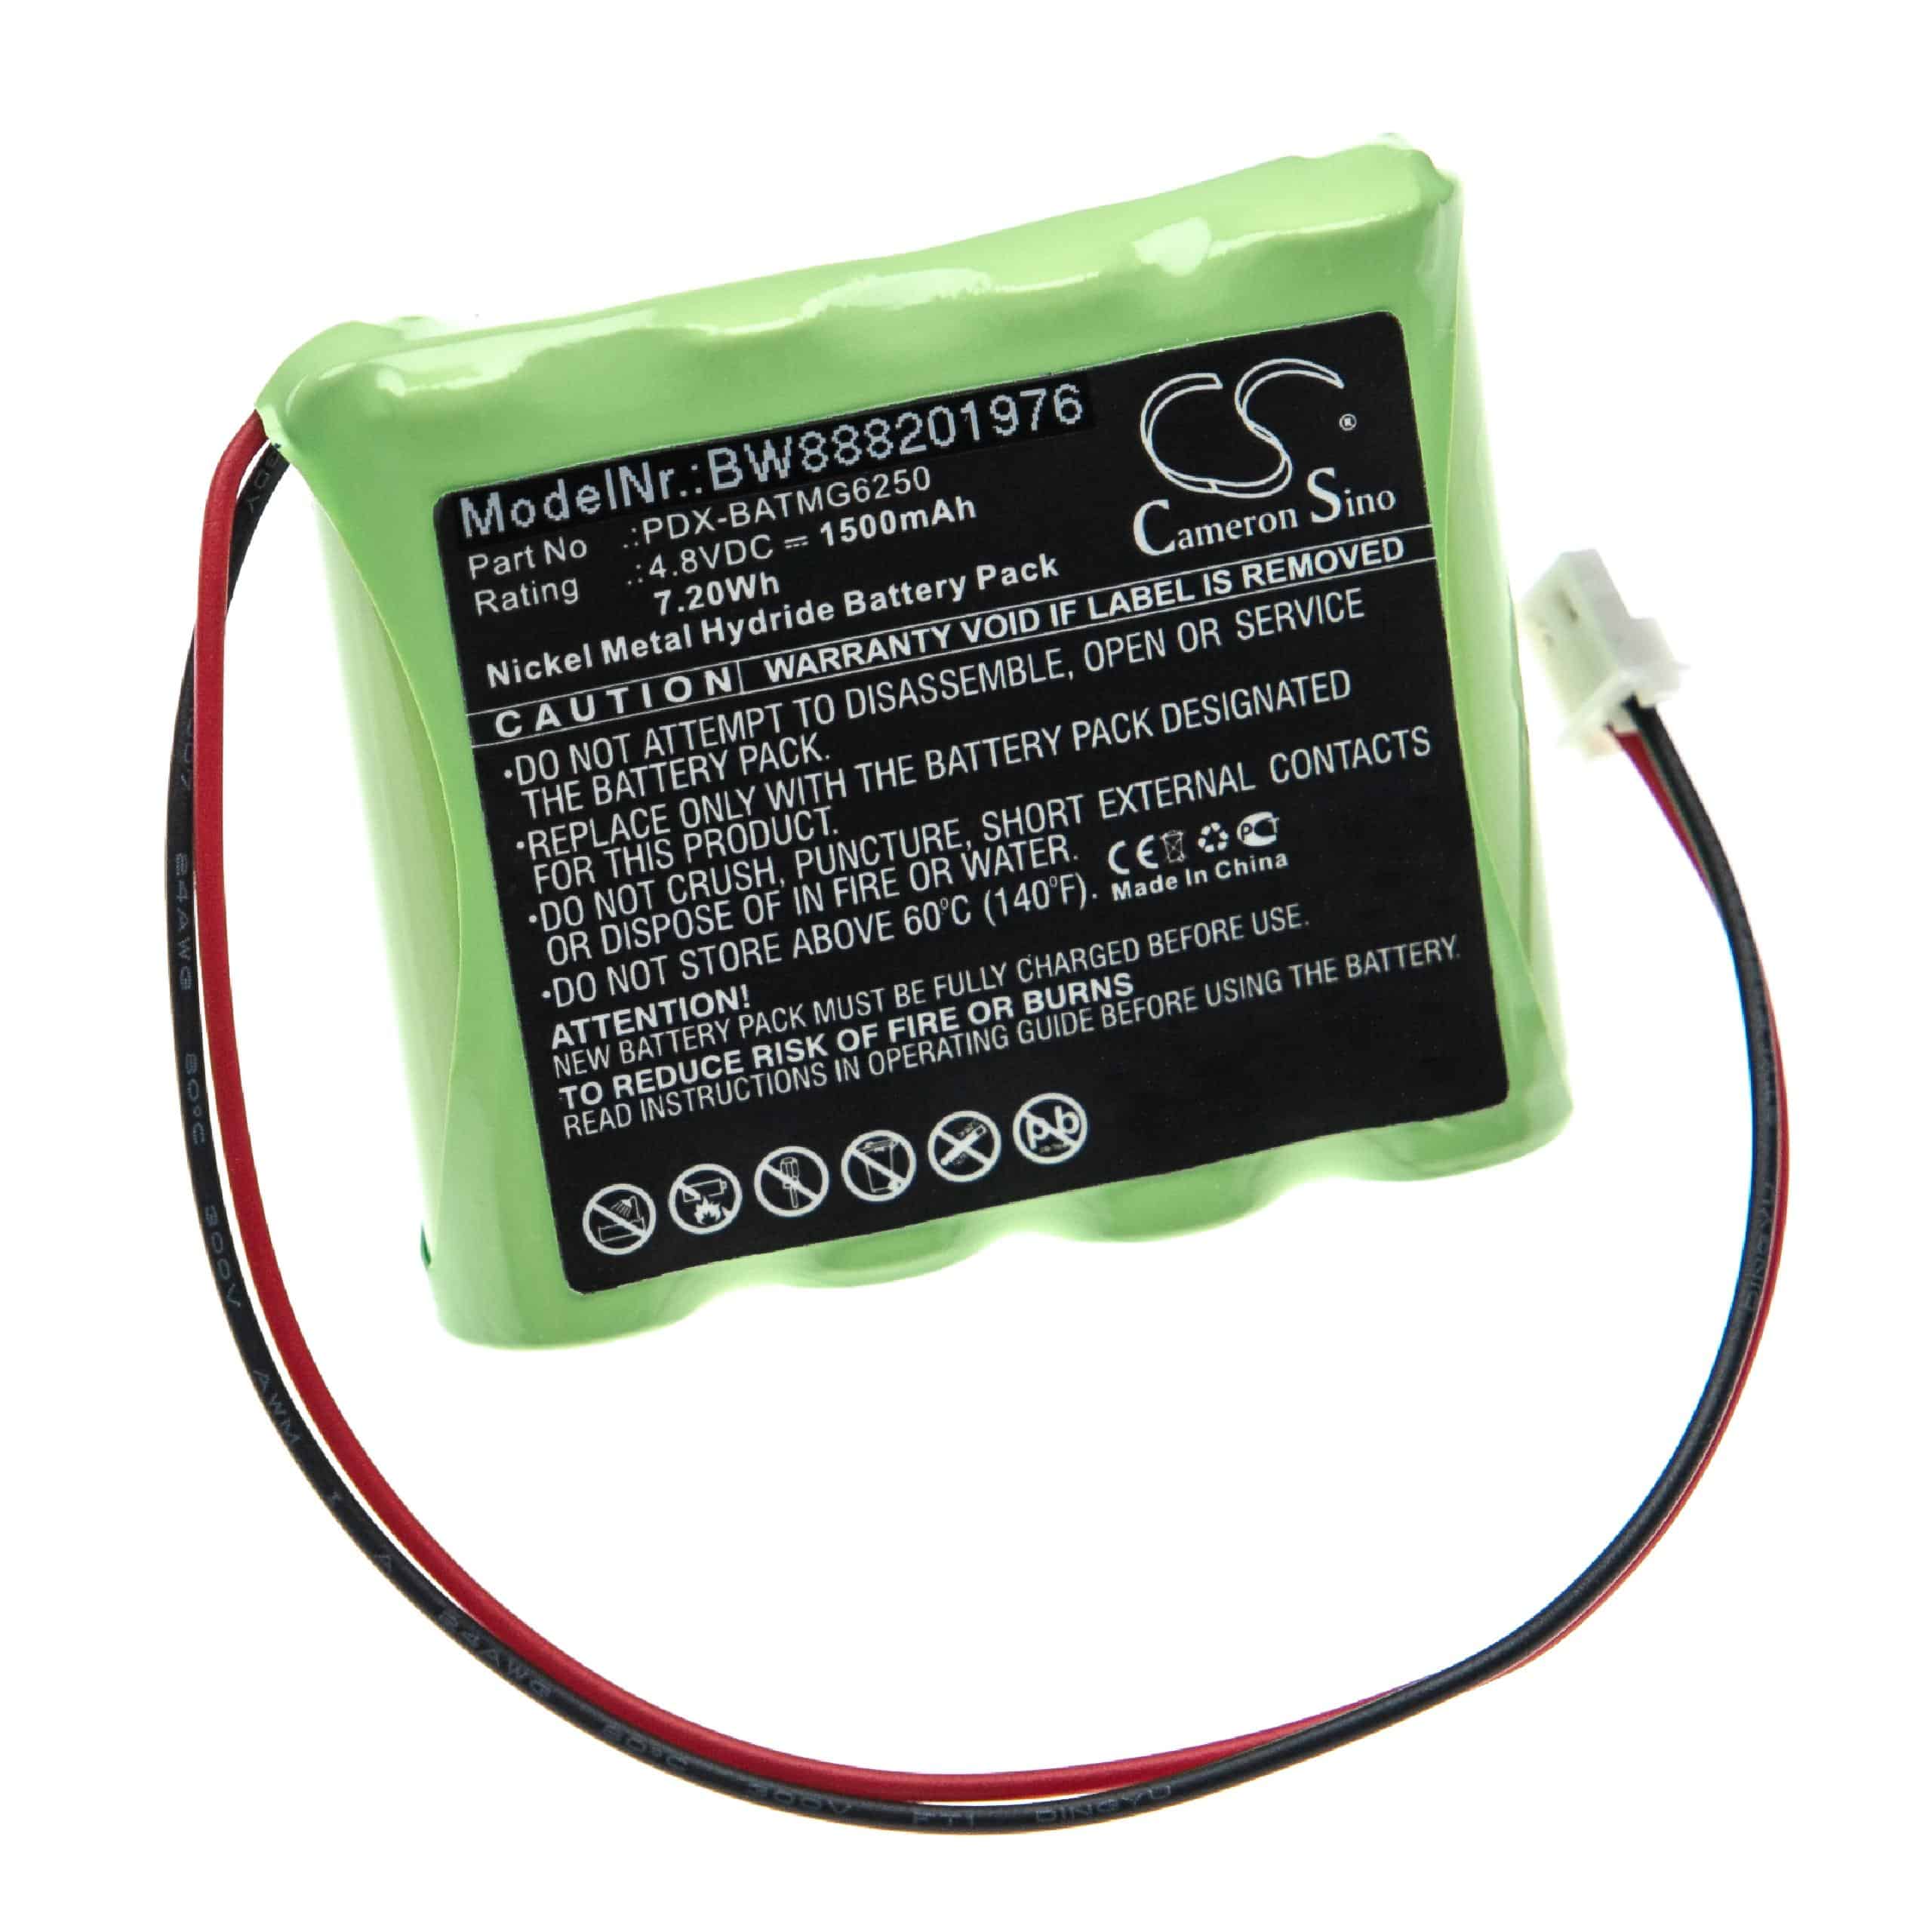 Batterie remplace Paradox PDX-BATMG6250 pour centrale d'alarme - 1500mAh 4,8V NiMH